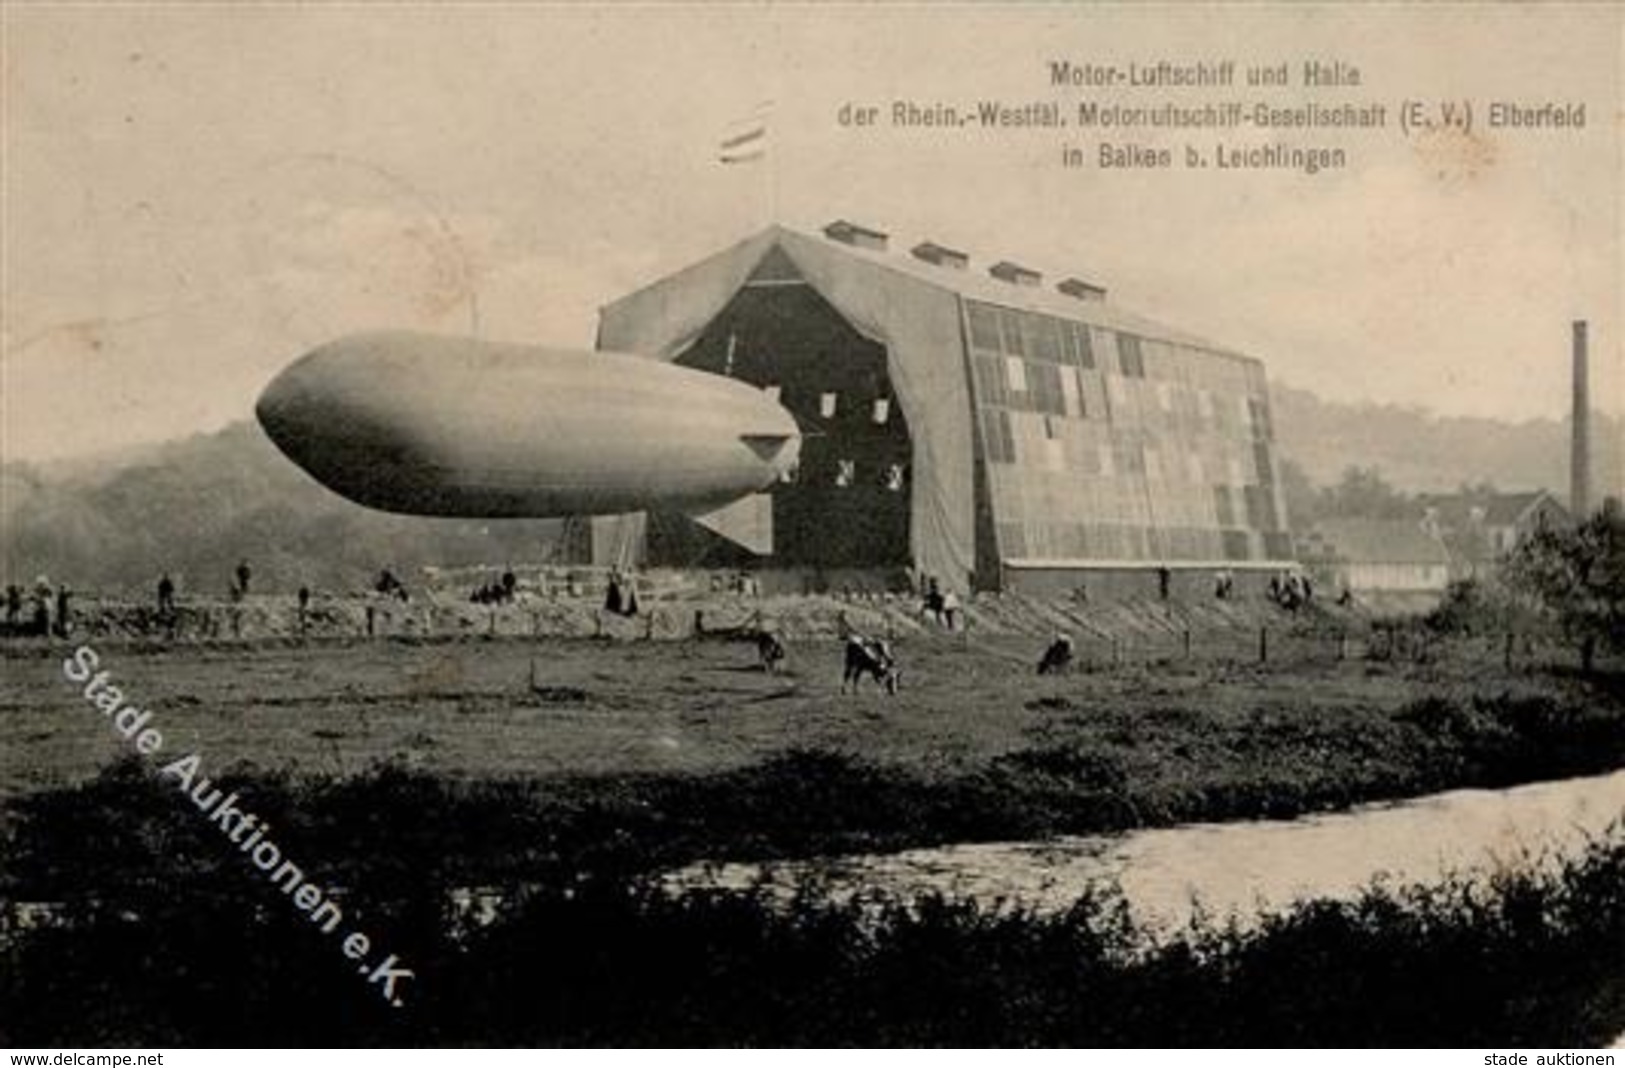 Zeppelin Leichlingen (5653) Motor Luftschiff Und Halle Elberfeld In Balken 1912 I-II Dirigeable - Dirigeables